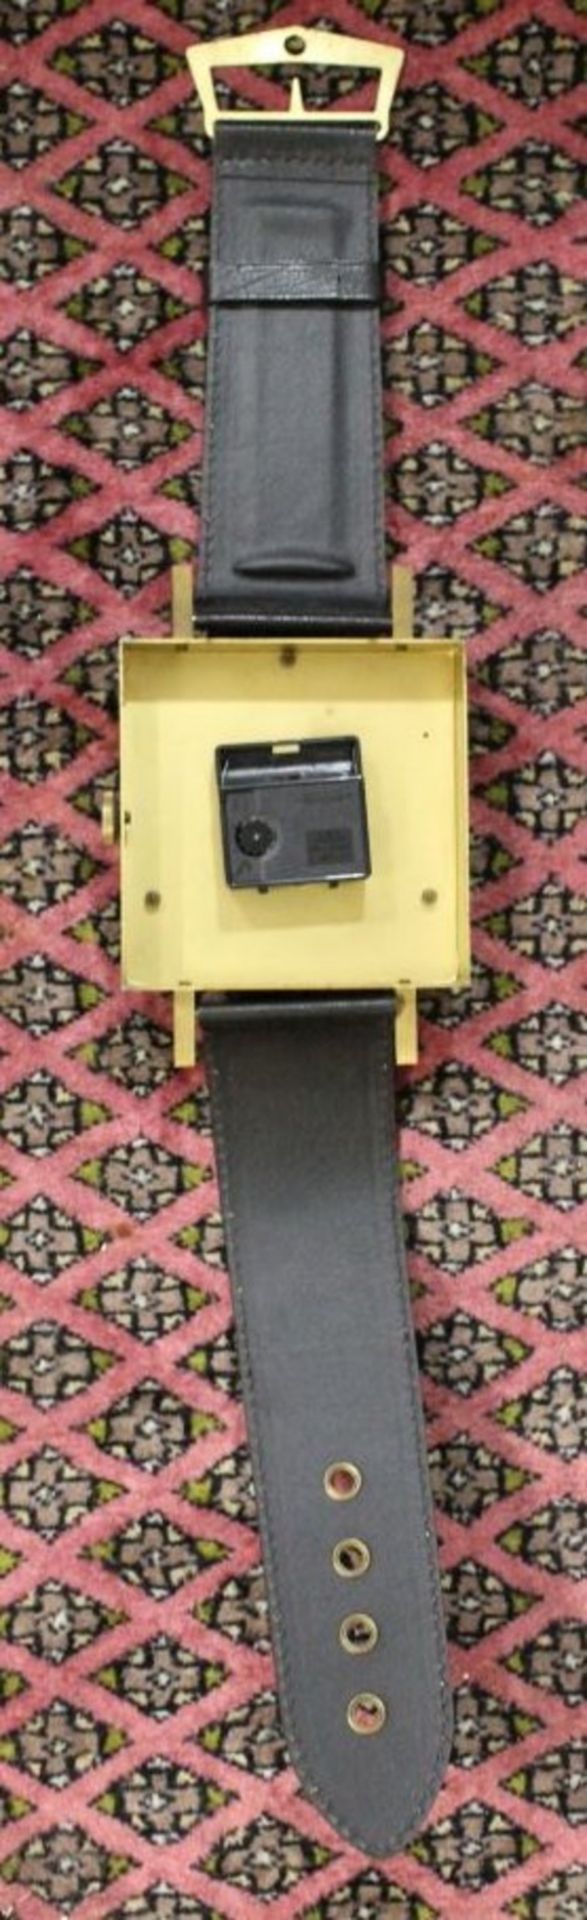 Wanduhr in Form einer Armbanduhr, Hettig, Batteriewerk, Funktion nicht geprüft, L-75cm. - Bild 3 aus 3